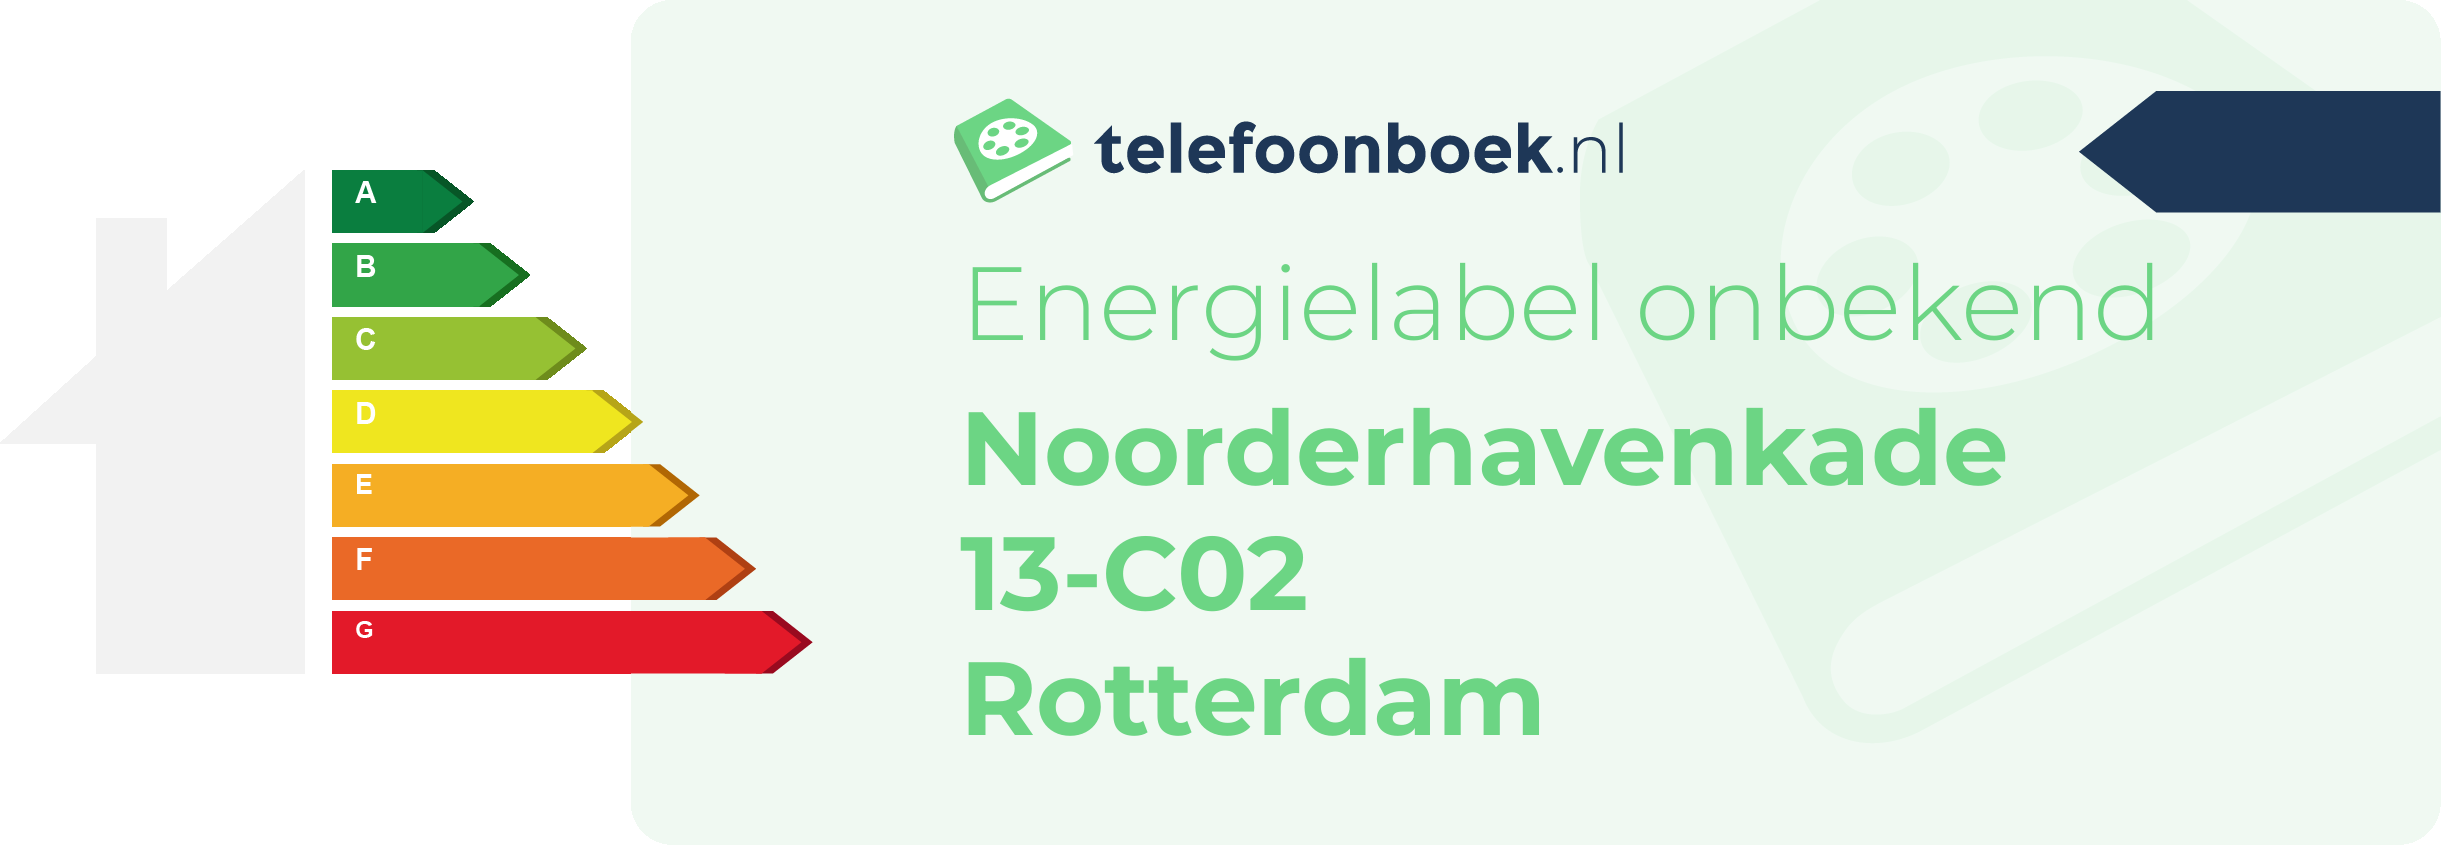 Energielabel Noorderhavenkade 13-C02 Rotterdam